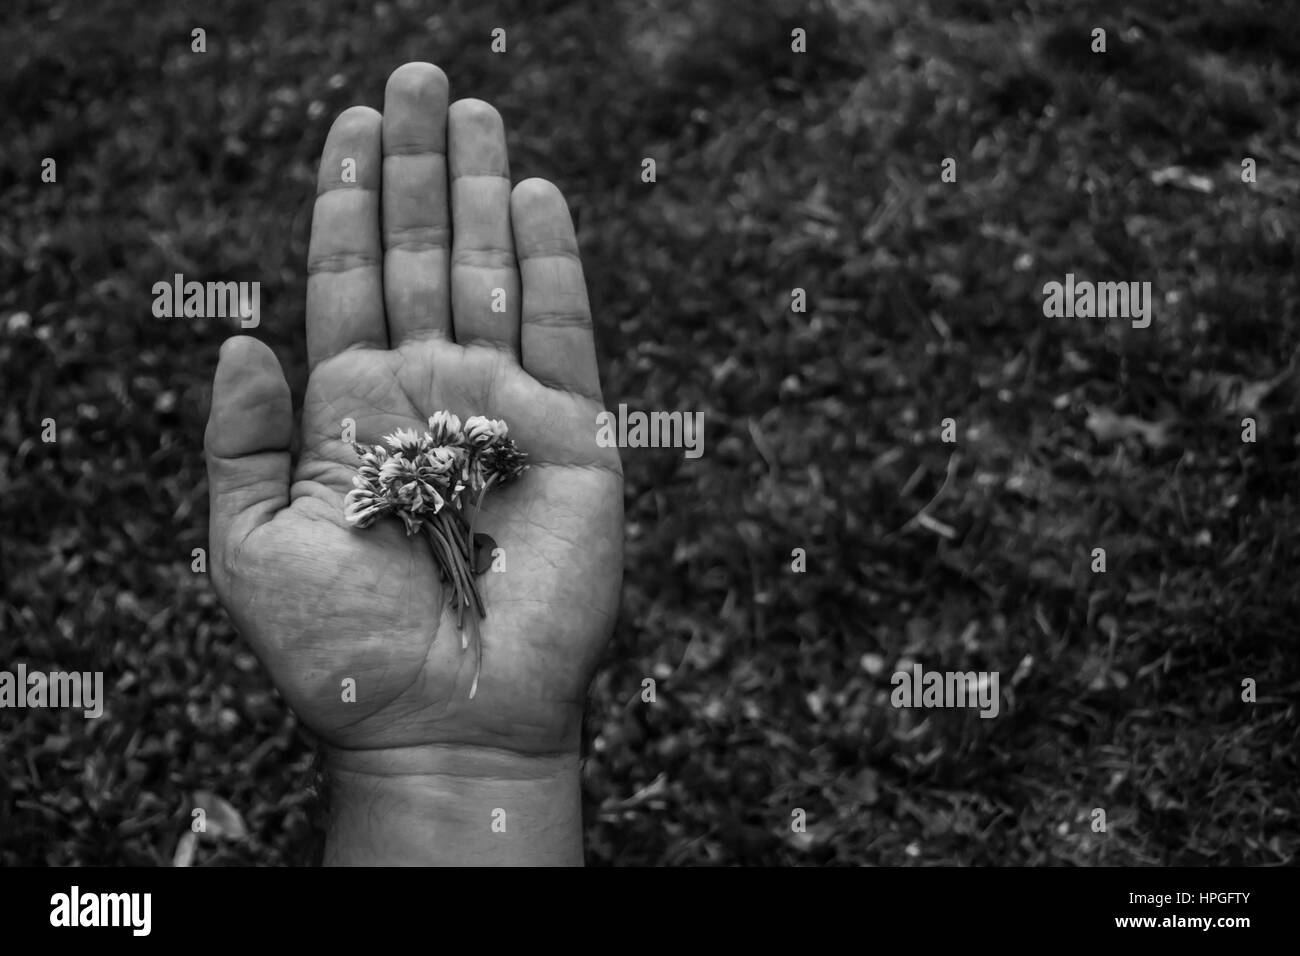 Primo piano di una mano che tiene i fiori bianchi. Foto in bianco e nero con un background non focalizzato Foto Stock